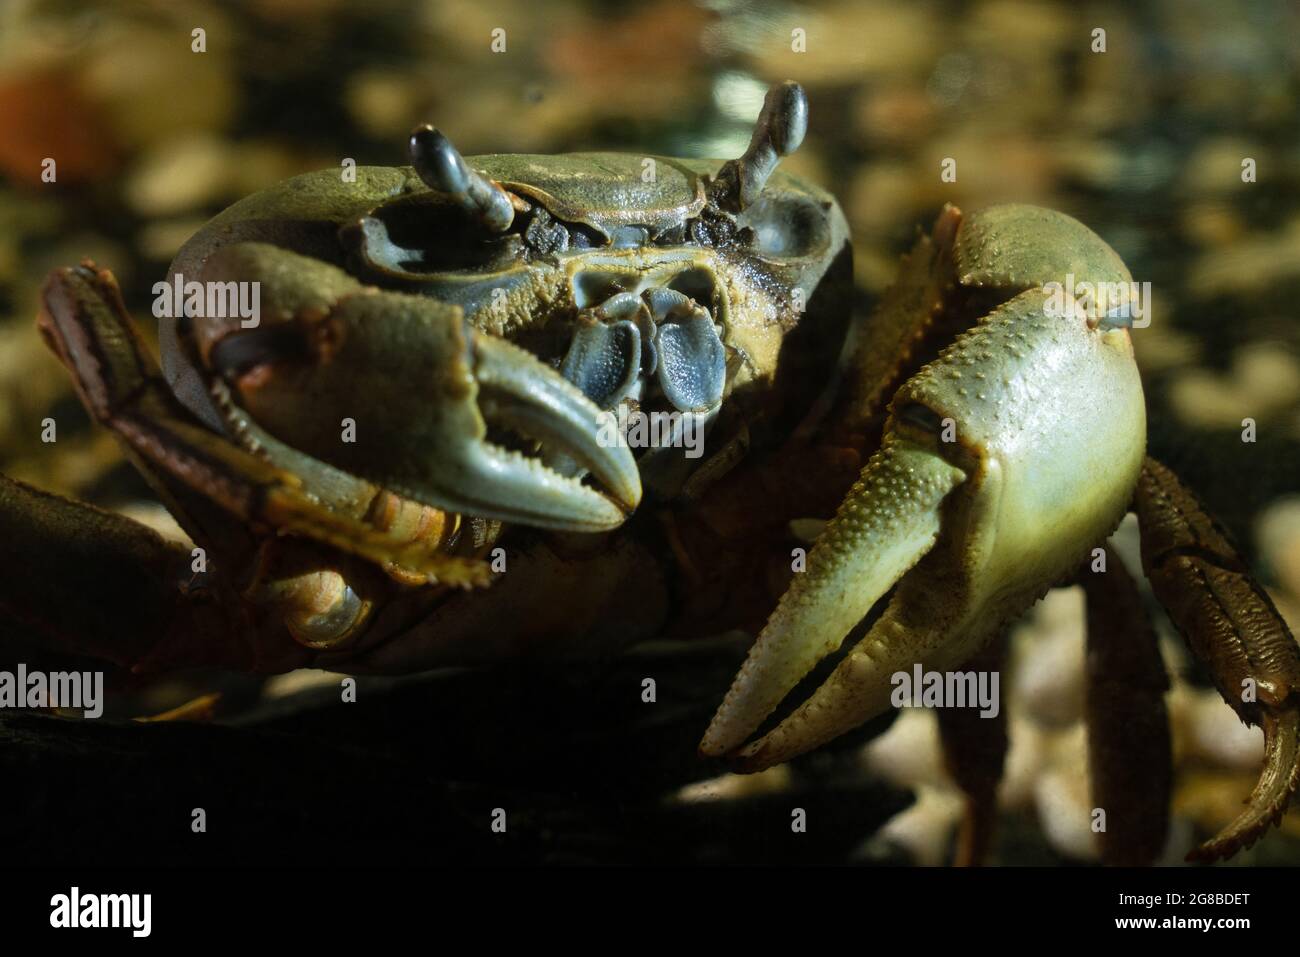 grand crabe gris-vert avec des griffes massives sur le fond de pierres au crépuscule. Les crabes sont des crustacés décapodes de l'infraorder Brachyura. Sauvages Banque D'Images